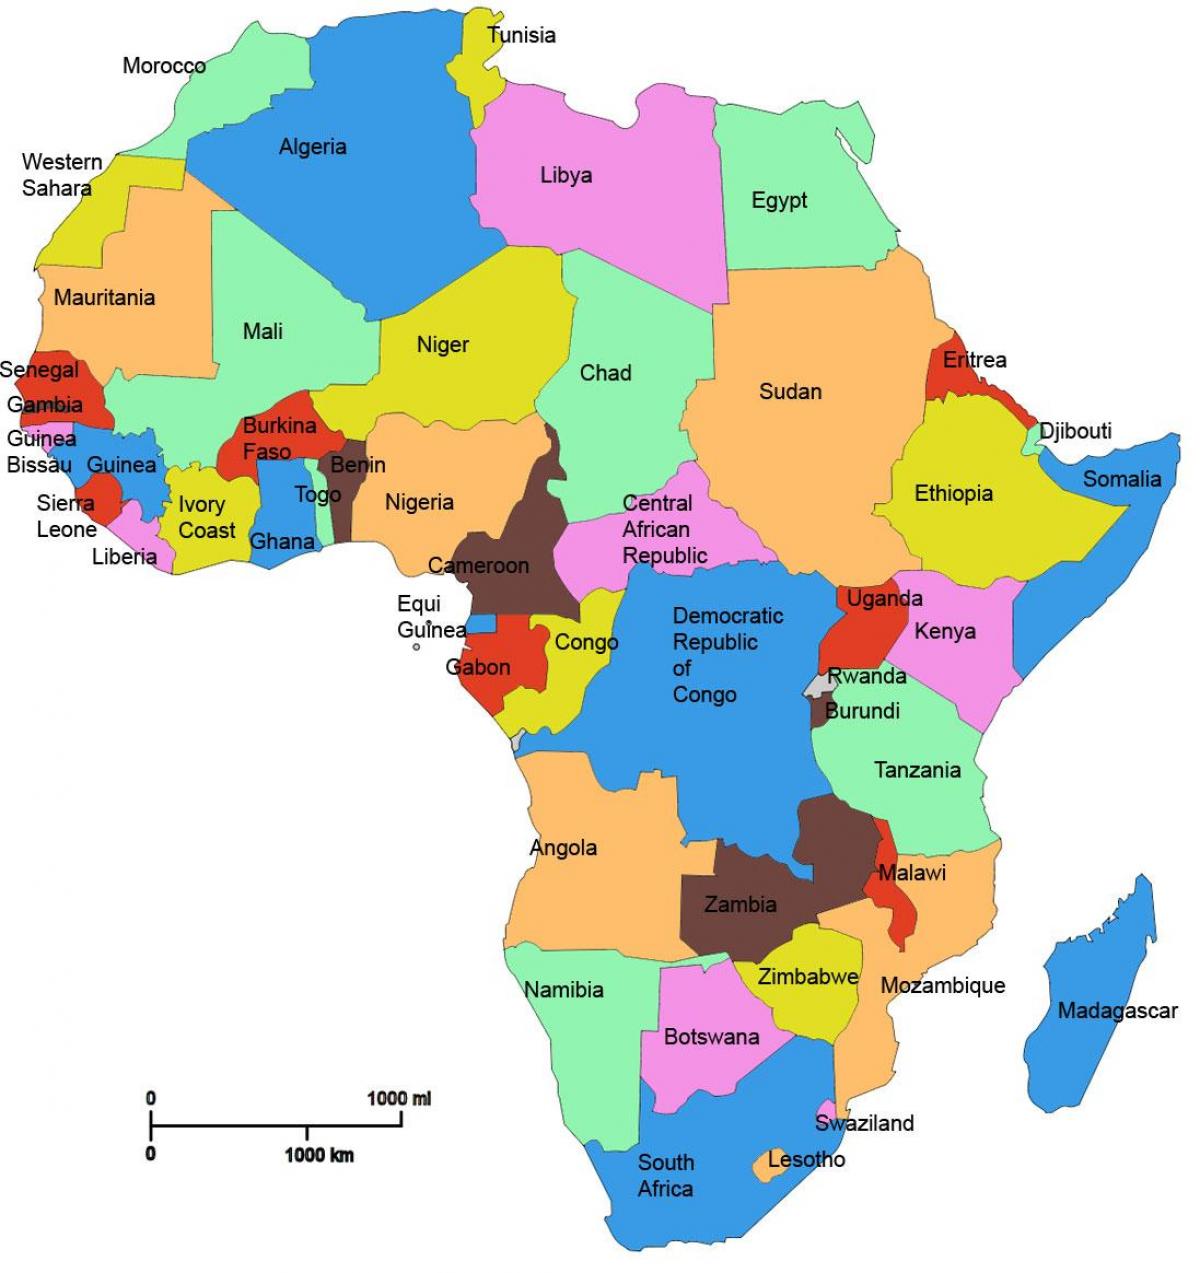 karta Afrike, pokazujući Tanzaniji